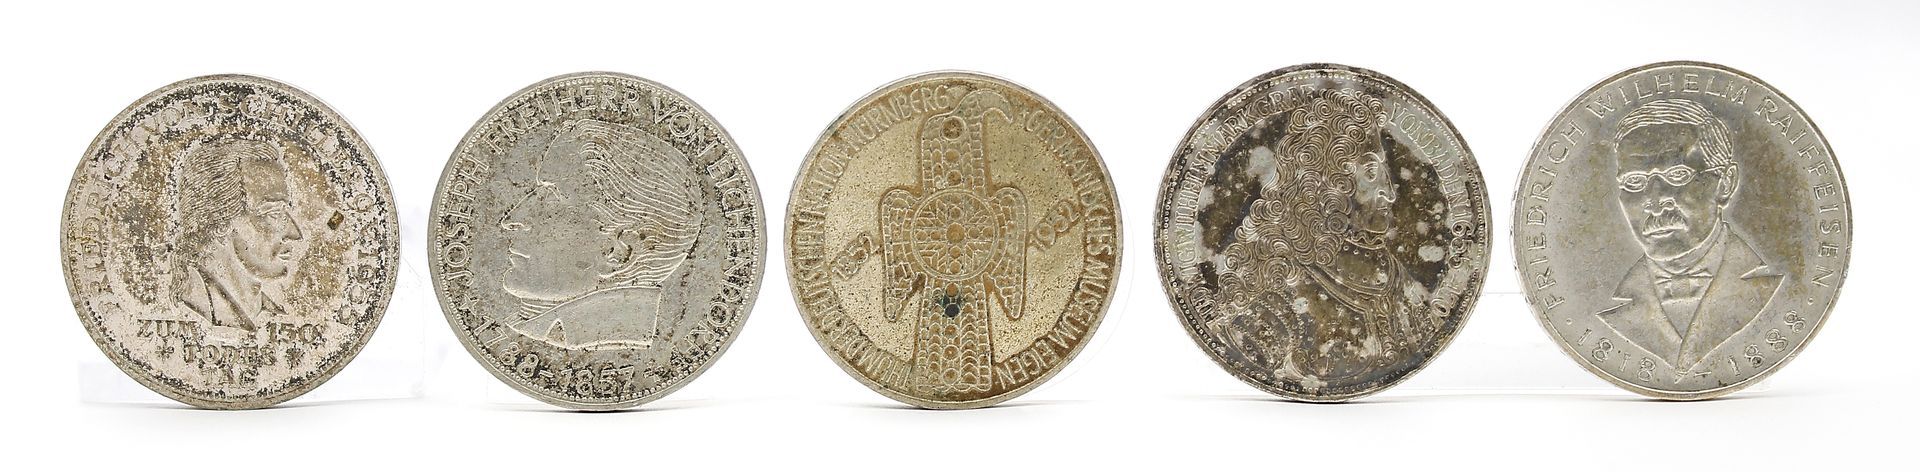 5x 5 DM Münzen.